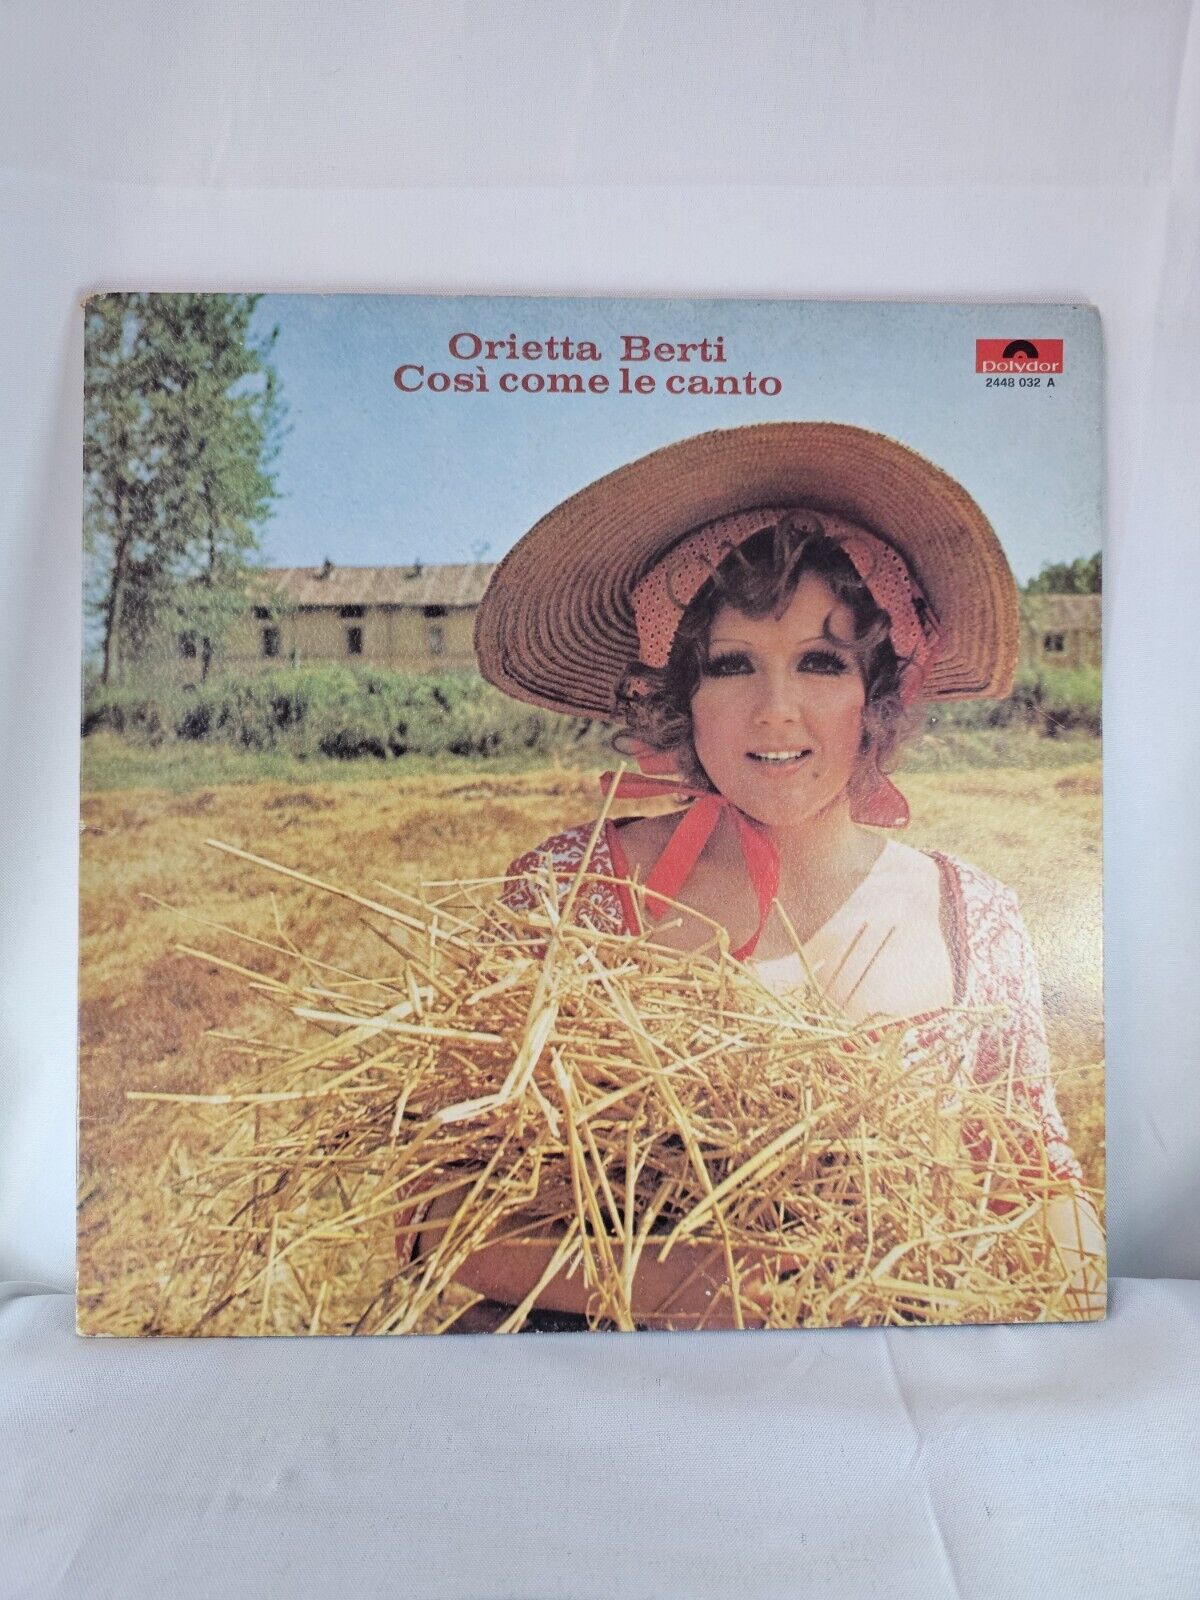 Orietta Berti: Cosi Come Le Canto [LP] 1974 Polydor Records Vinyl Album Italy